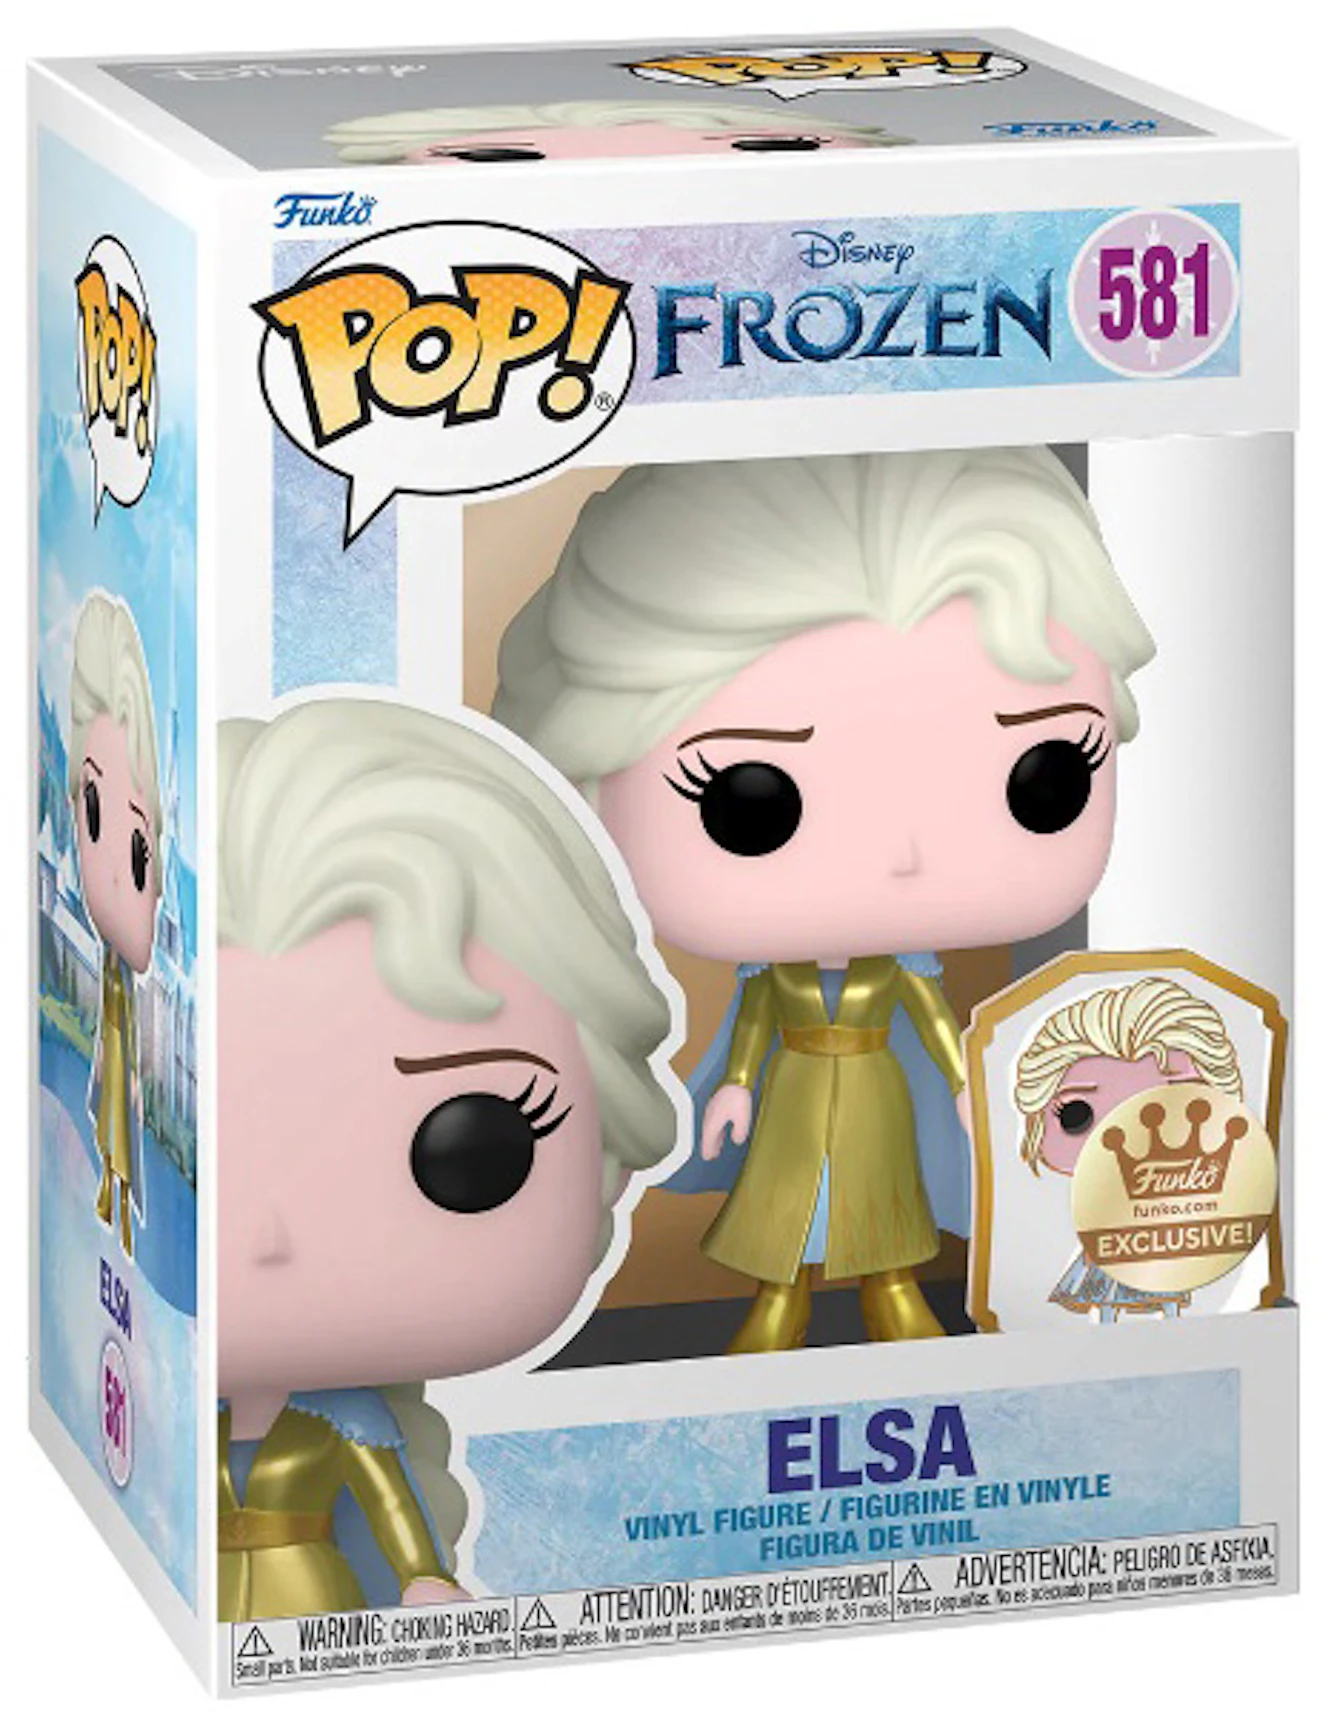 Pech Heel boos contant geld Funko Pop! Disney Frozen Elsa with Pin Gold Label Funko Shop Exclusive  Figure #581 - US